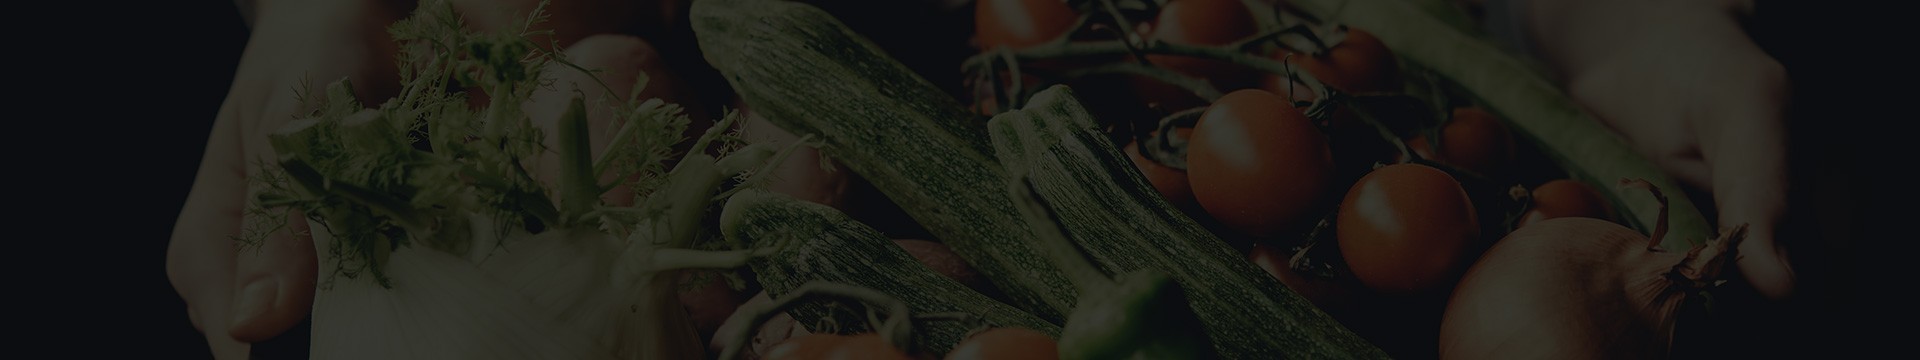 Productos de la huerta | Verdura gallega | Berza Gallega